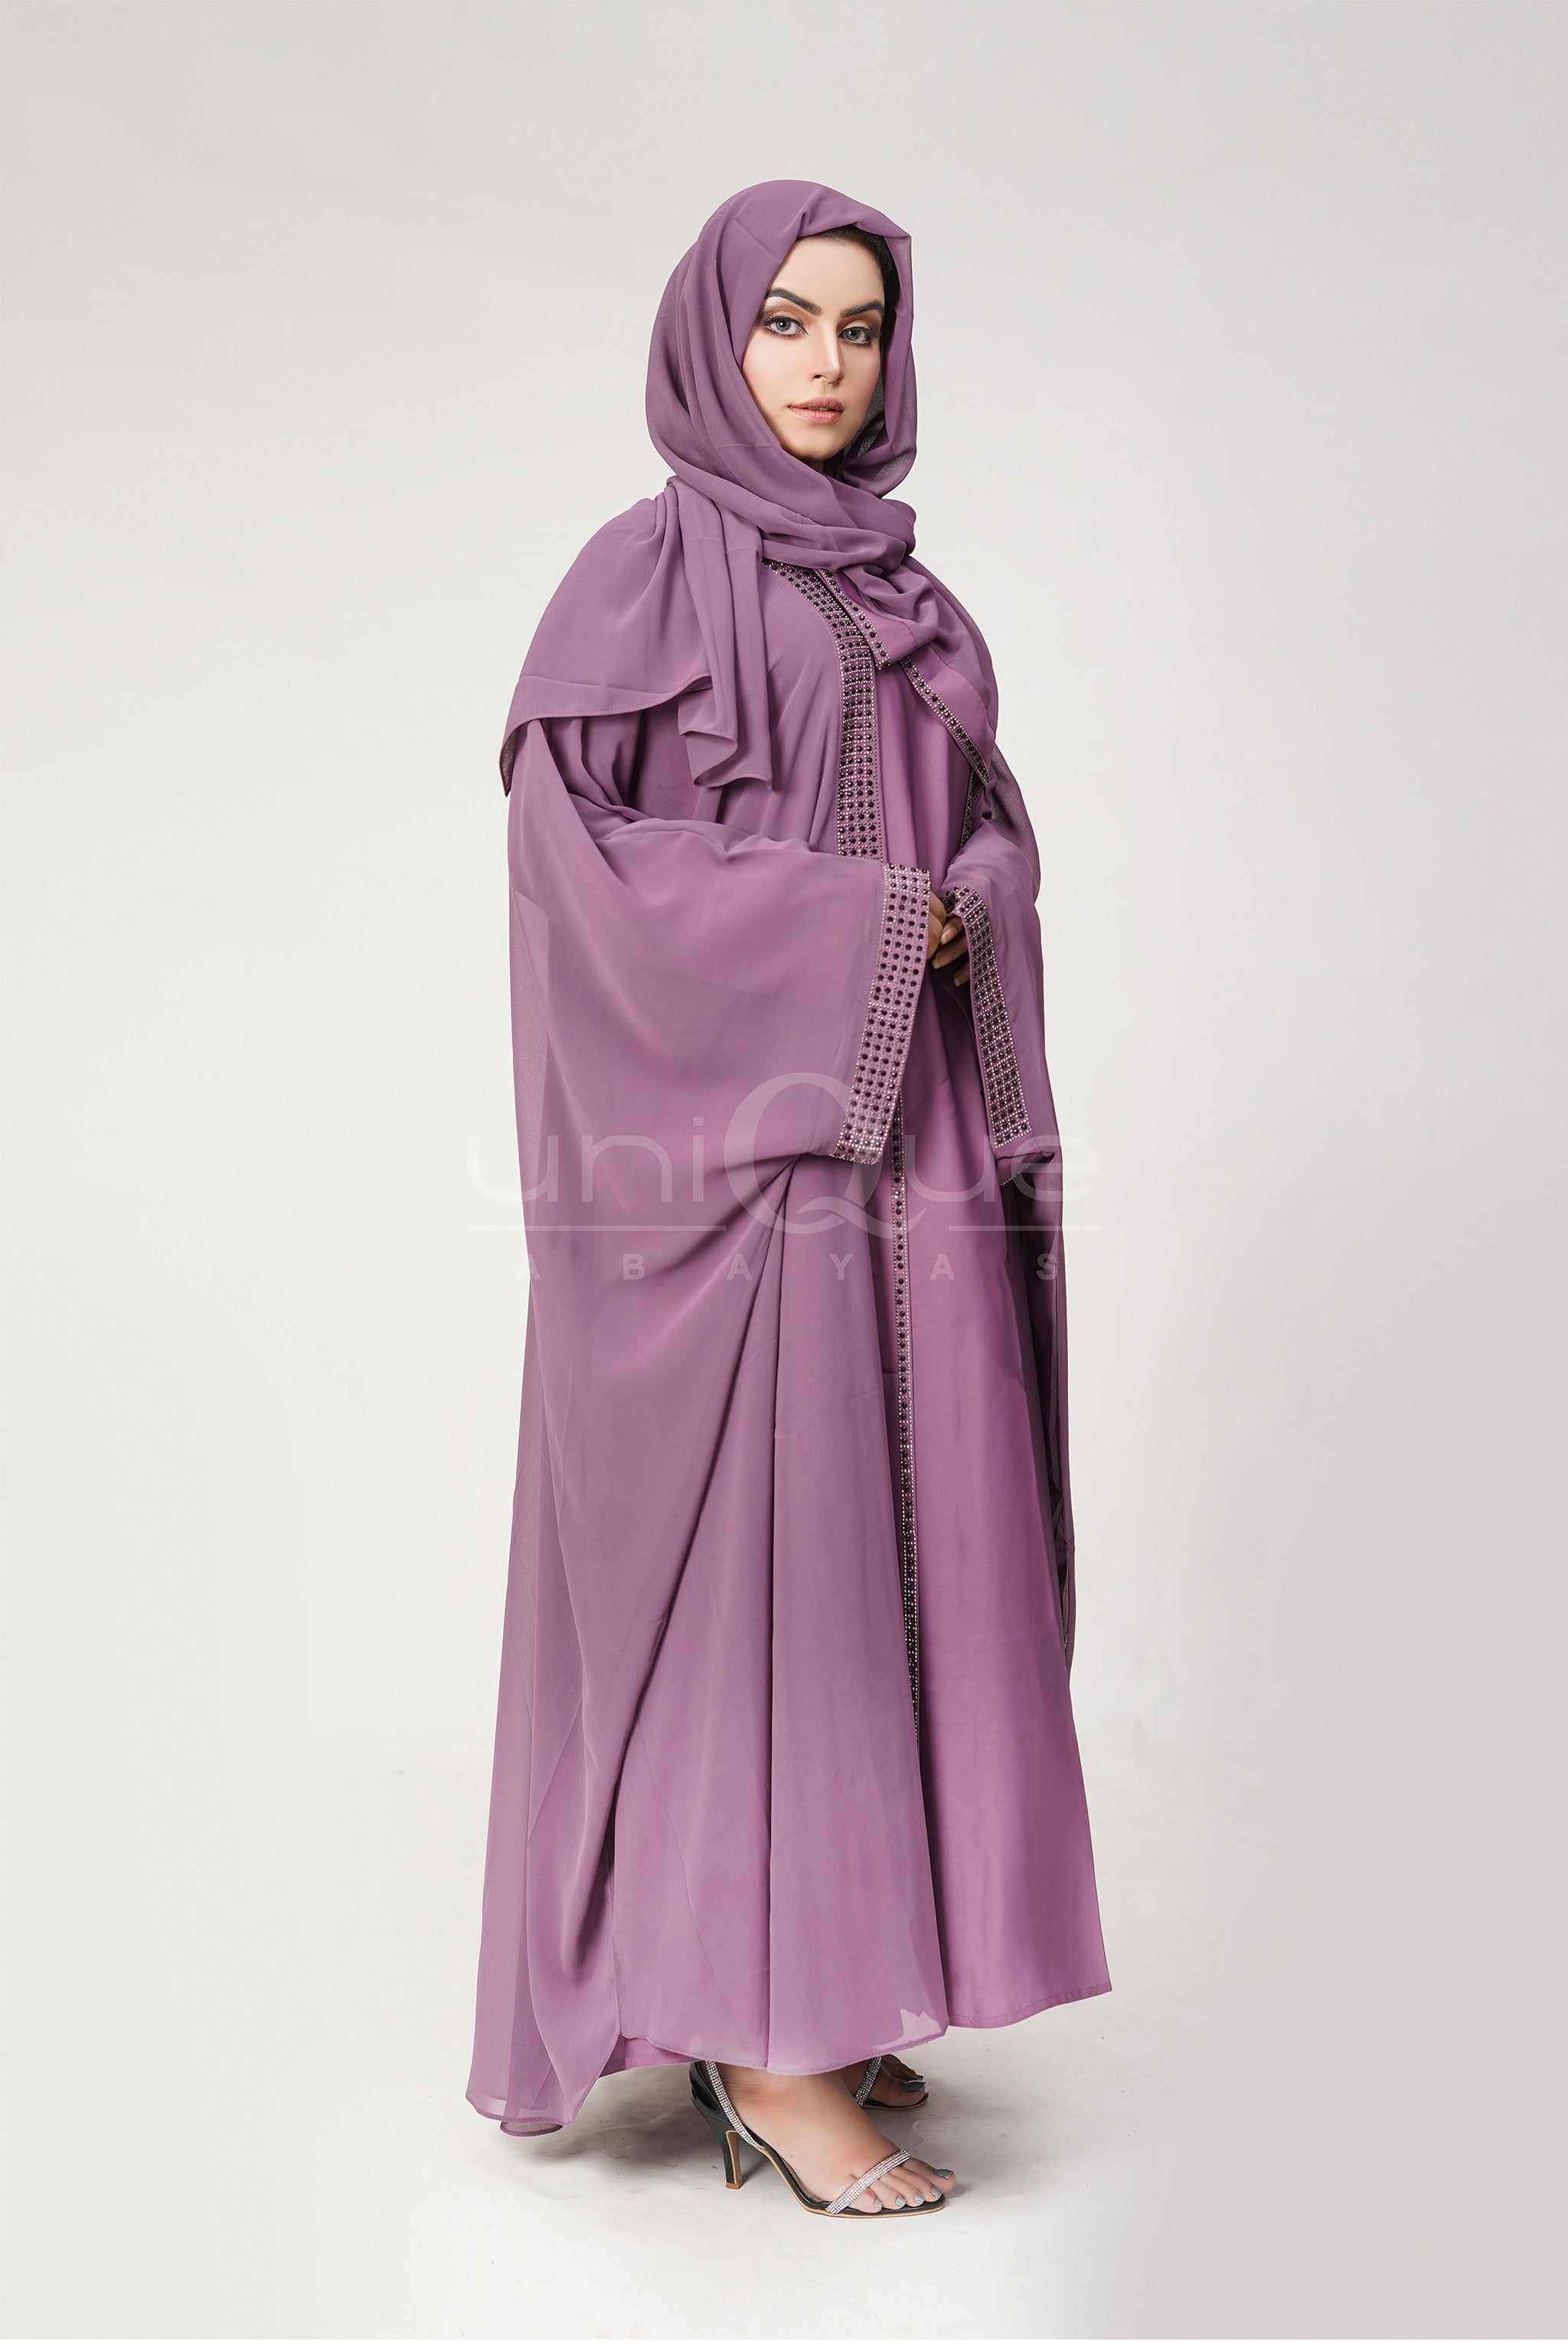 Chiffon Batwing Purple Abaya by Uniquewallart Abaya for Women, Front Side View